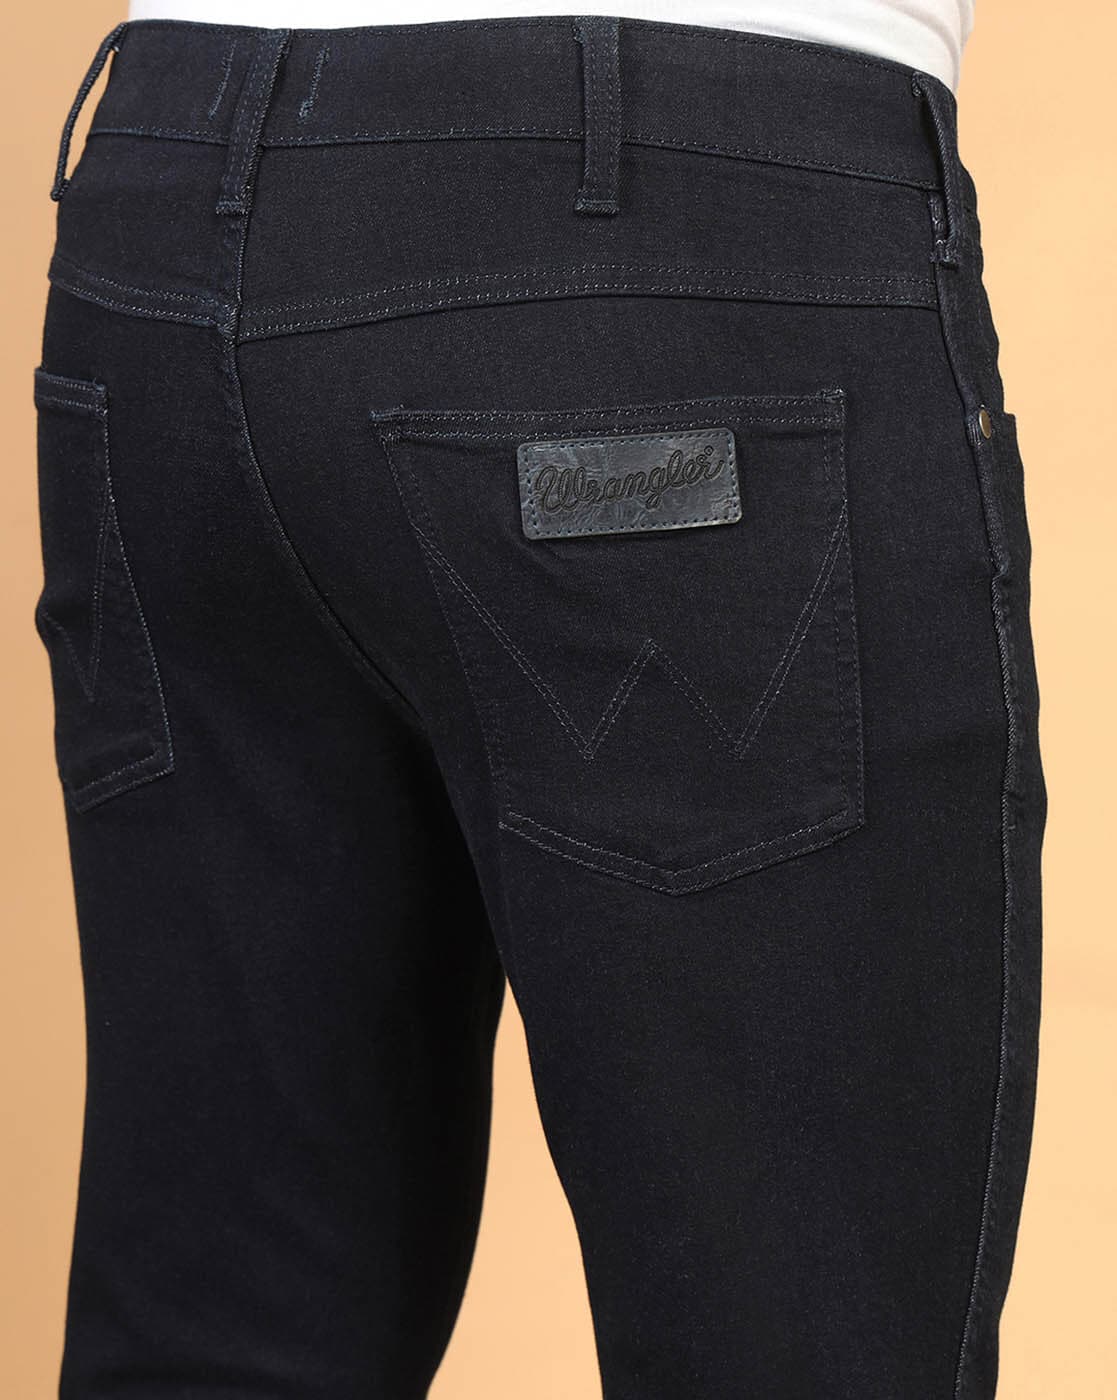 Wrangler Black Regular Fit Men Denim Jeans at Rs 500/piece, Wrangler Denim  Clothing in Mohali